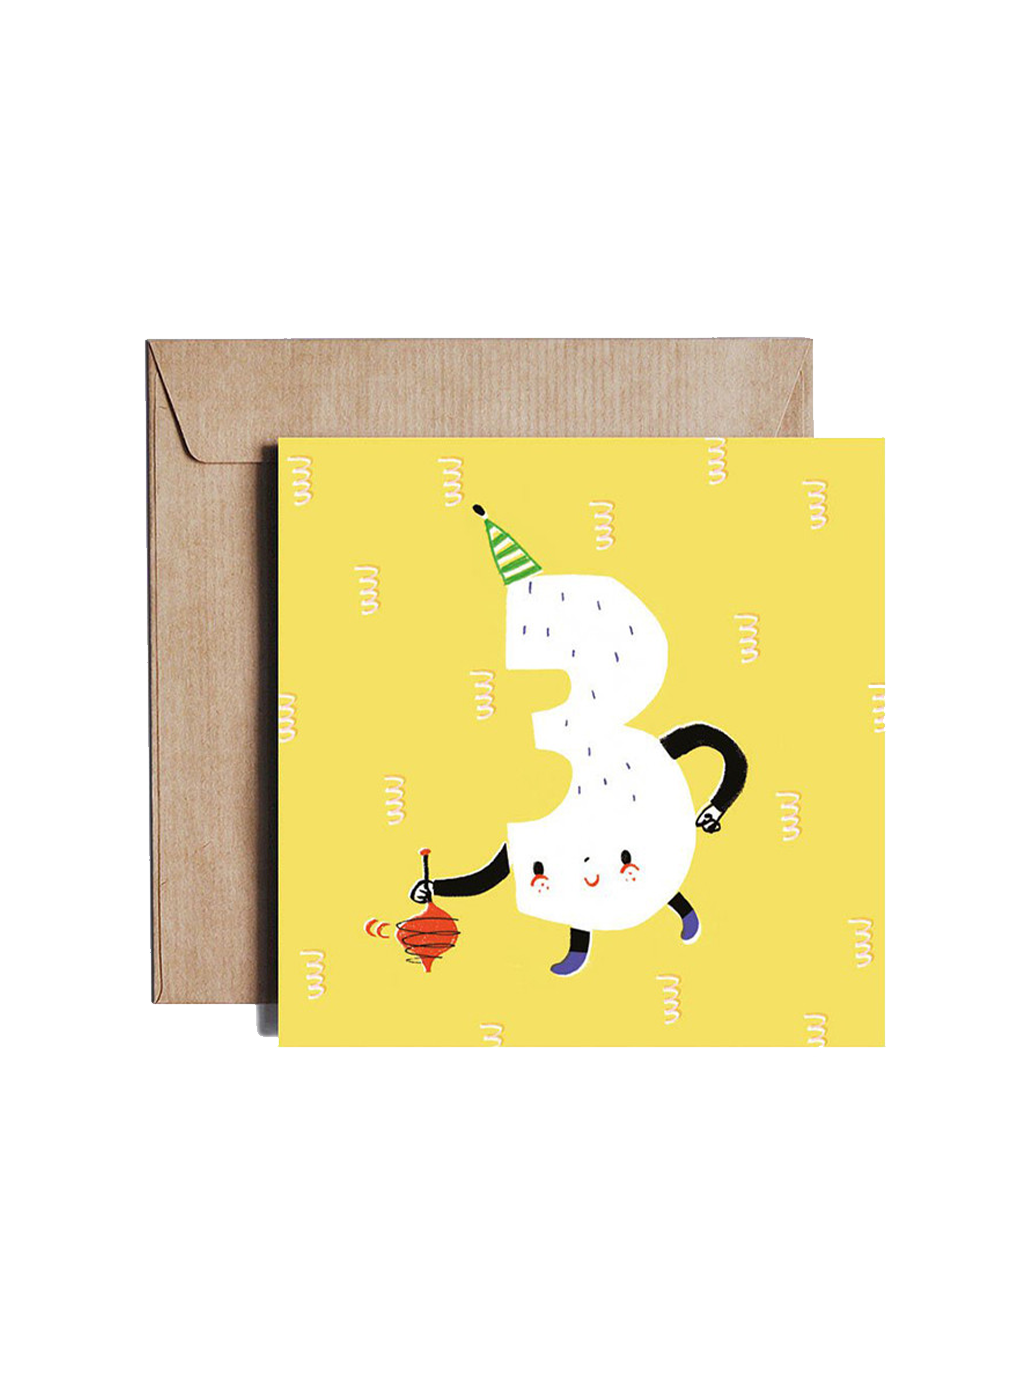 birthday card designed by Agata Królak